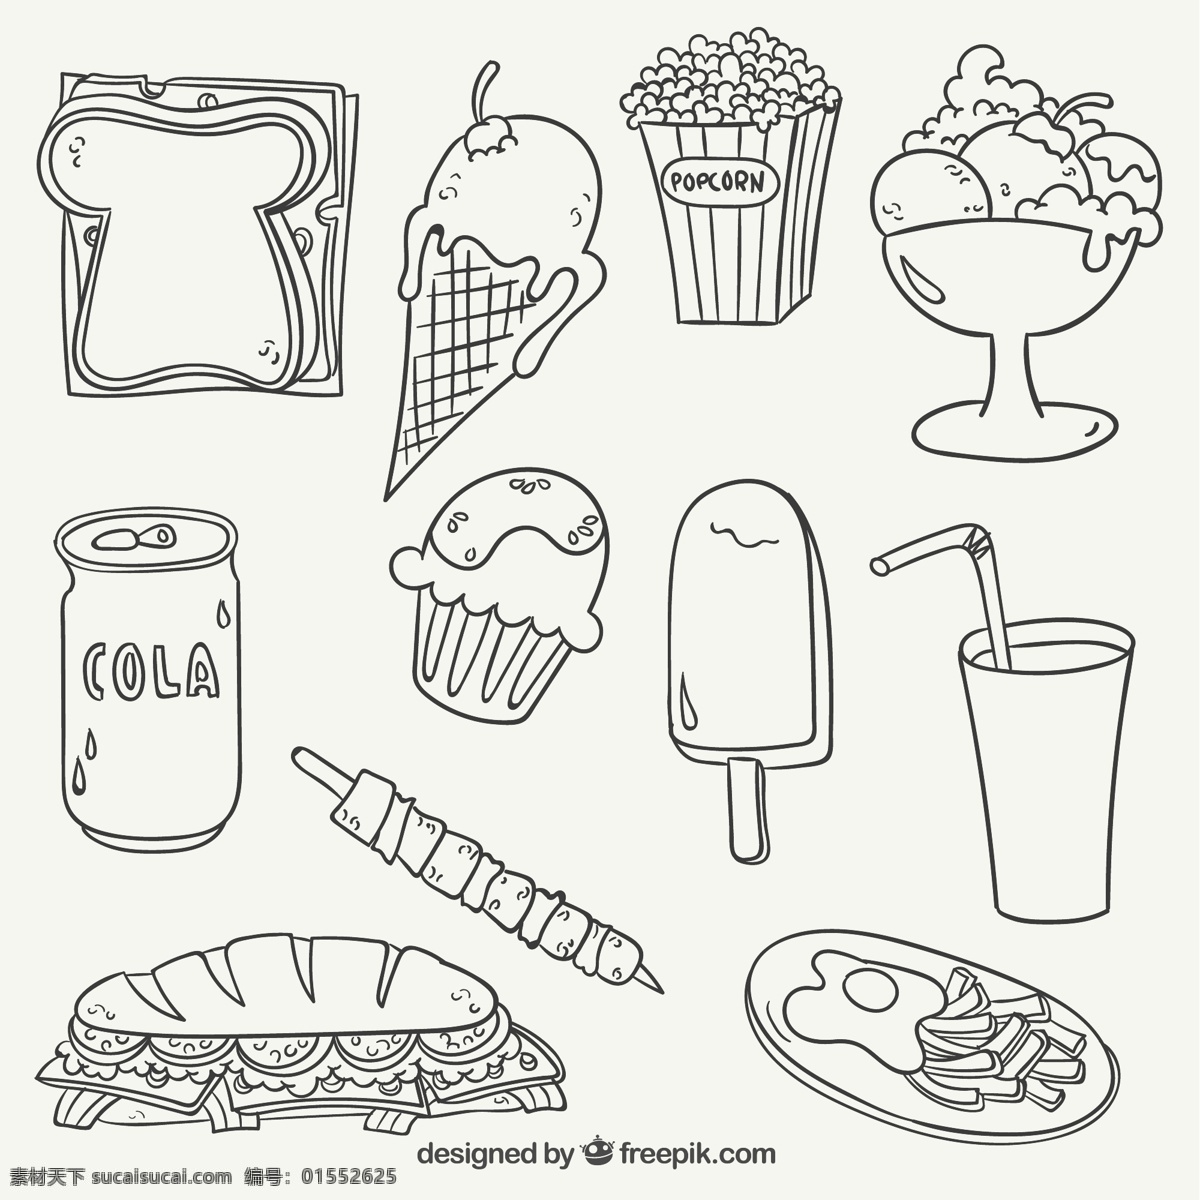 款 手绘 食物 矢量 三明治 冰淇淋 爆米花 冰淇淋杯 雪糕 冰棒 可乐 烤串 薯条 煎蛋 快餐 甜品 矢量图 白色